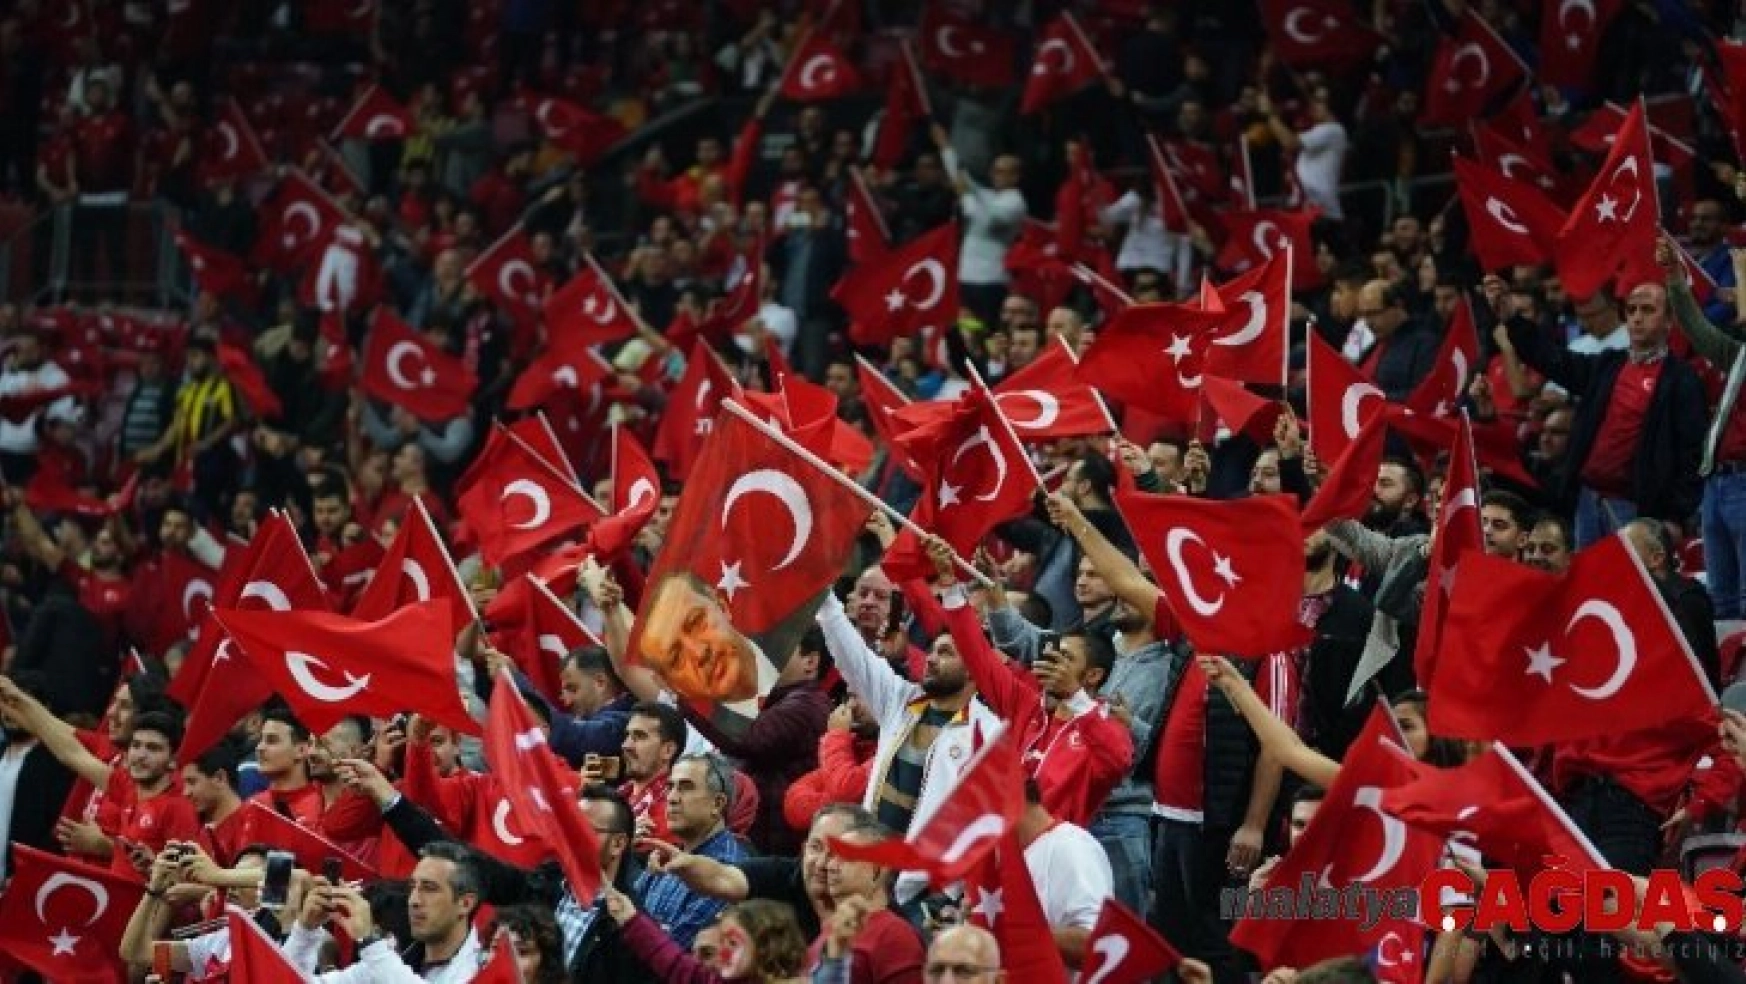 Türkiye-İzlanda maçını 48 bin kişi izledi